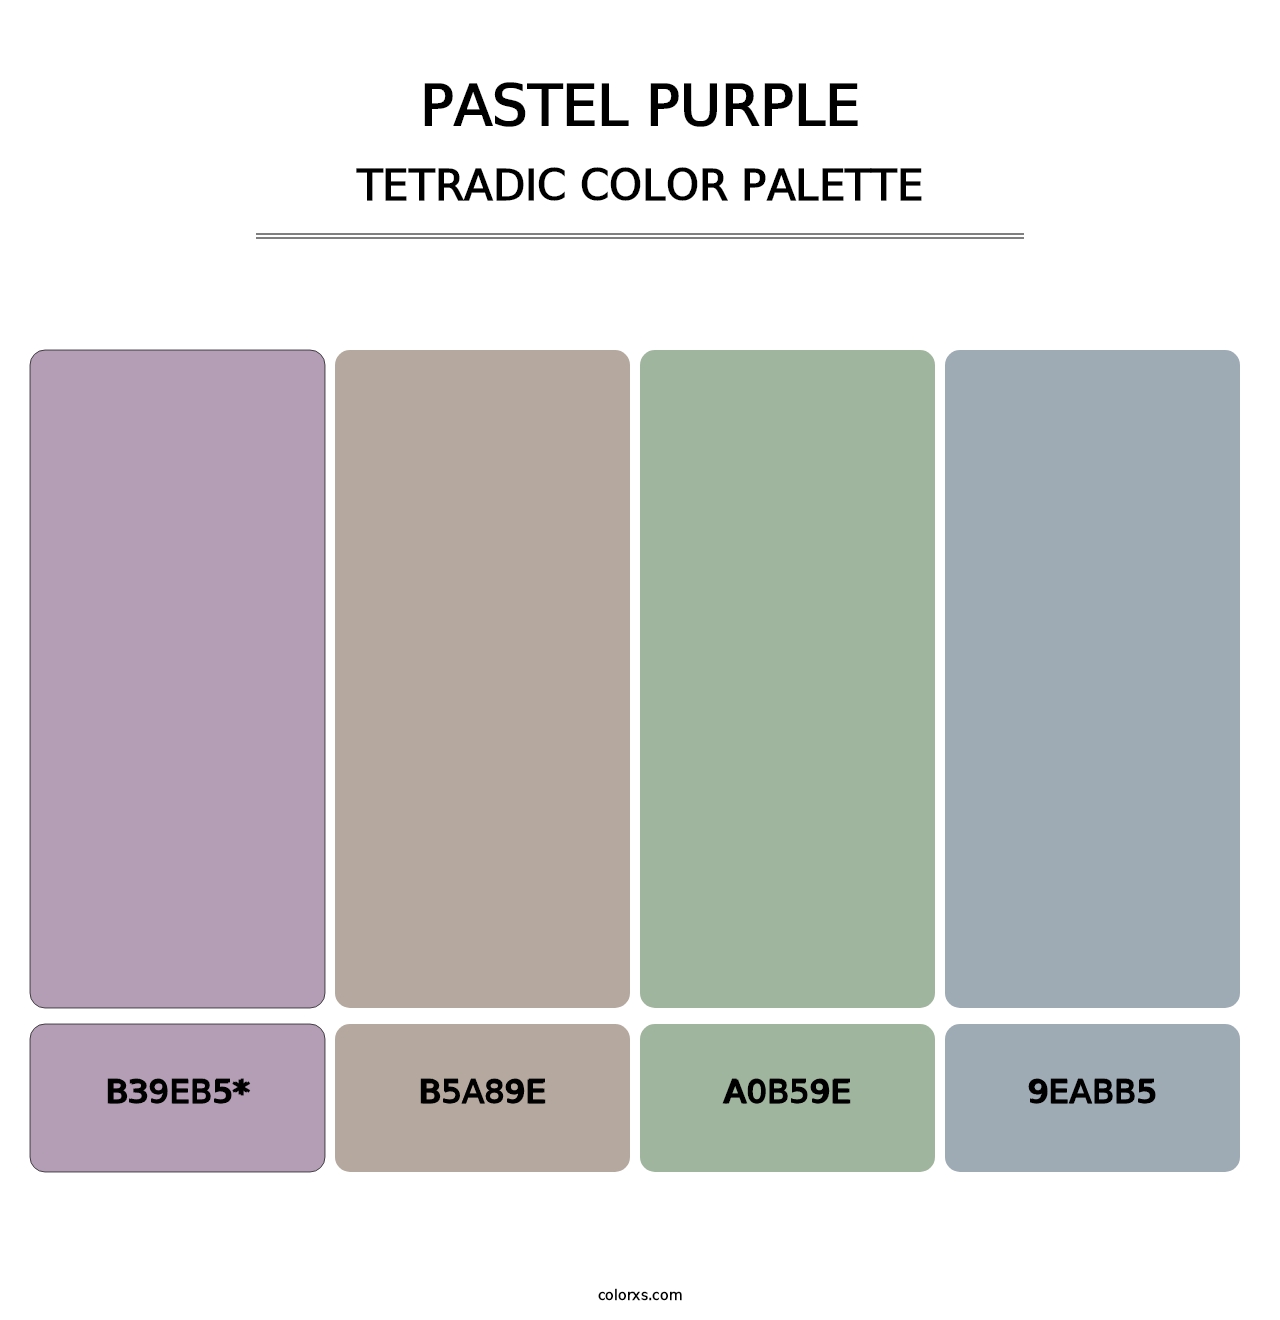 Pastel Purple - Tetradic Color Palette